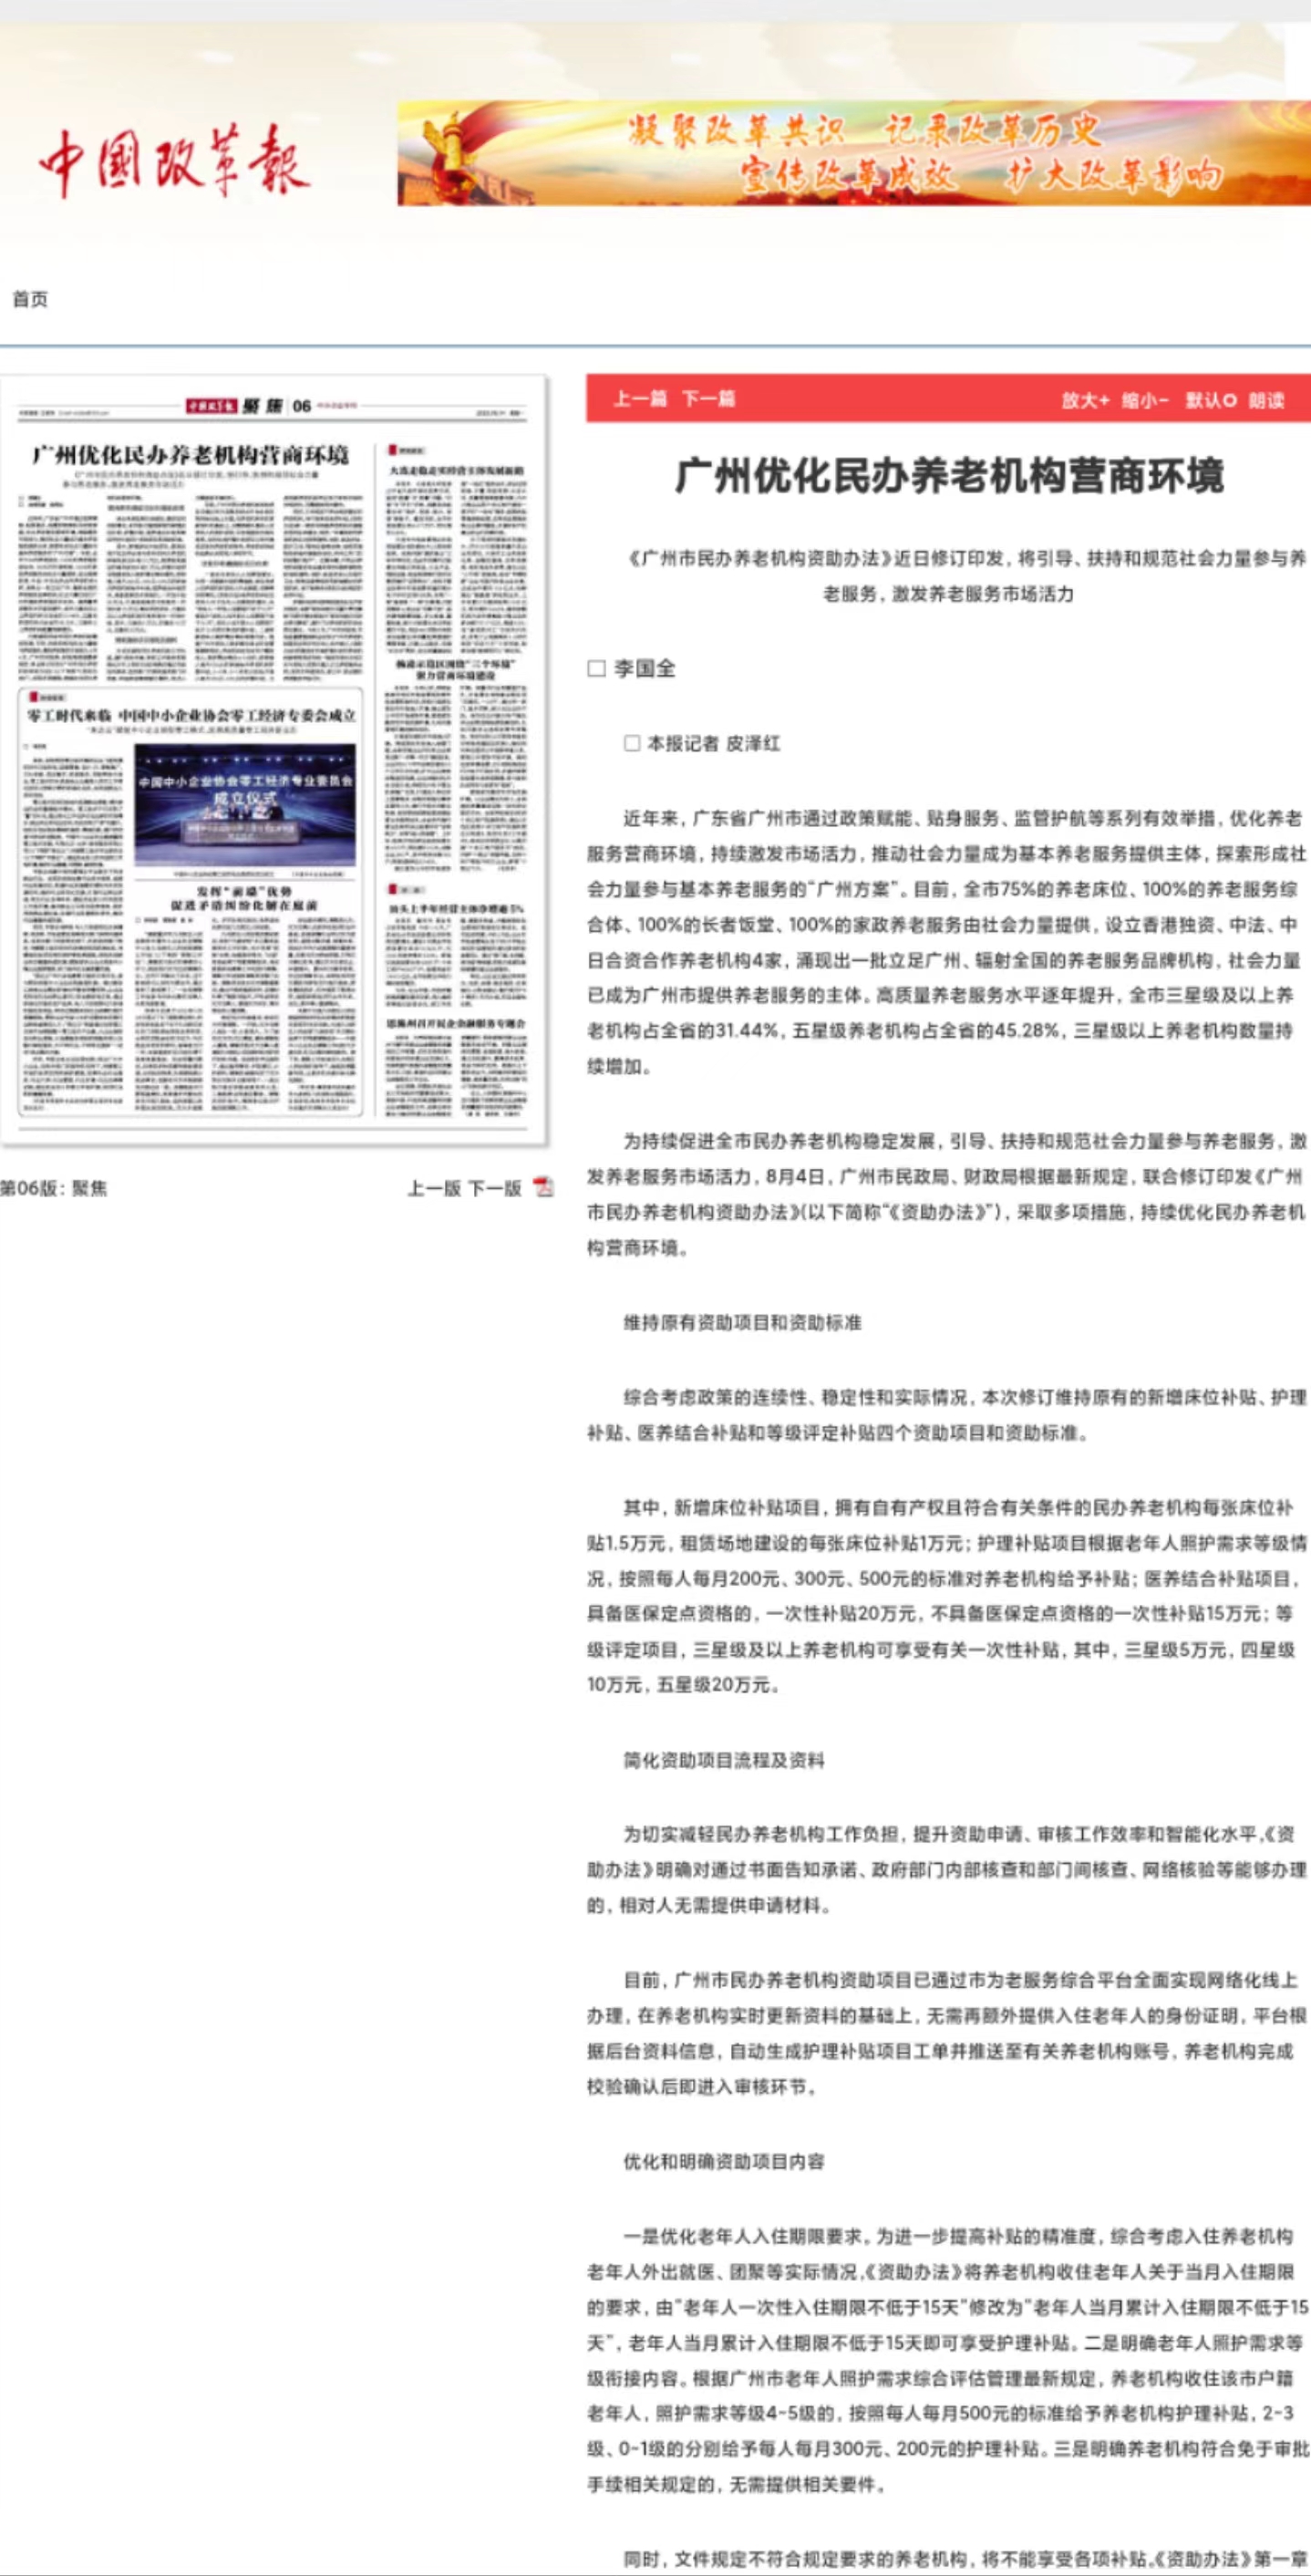 【中国改革报】长期顺畅，出刊稳妥。